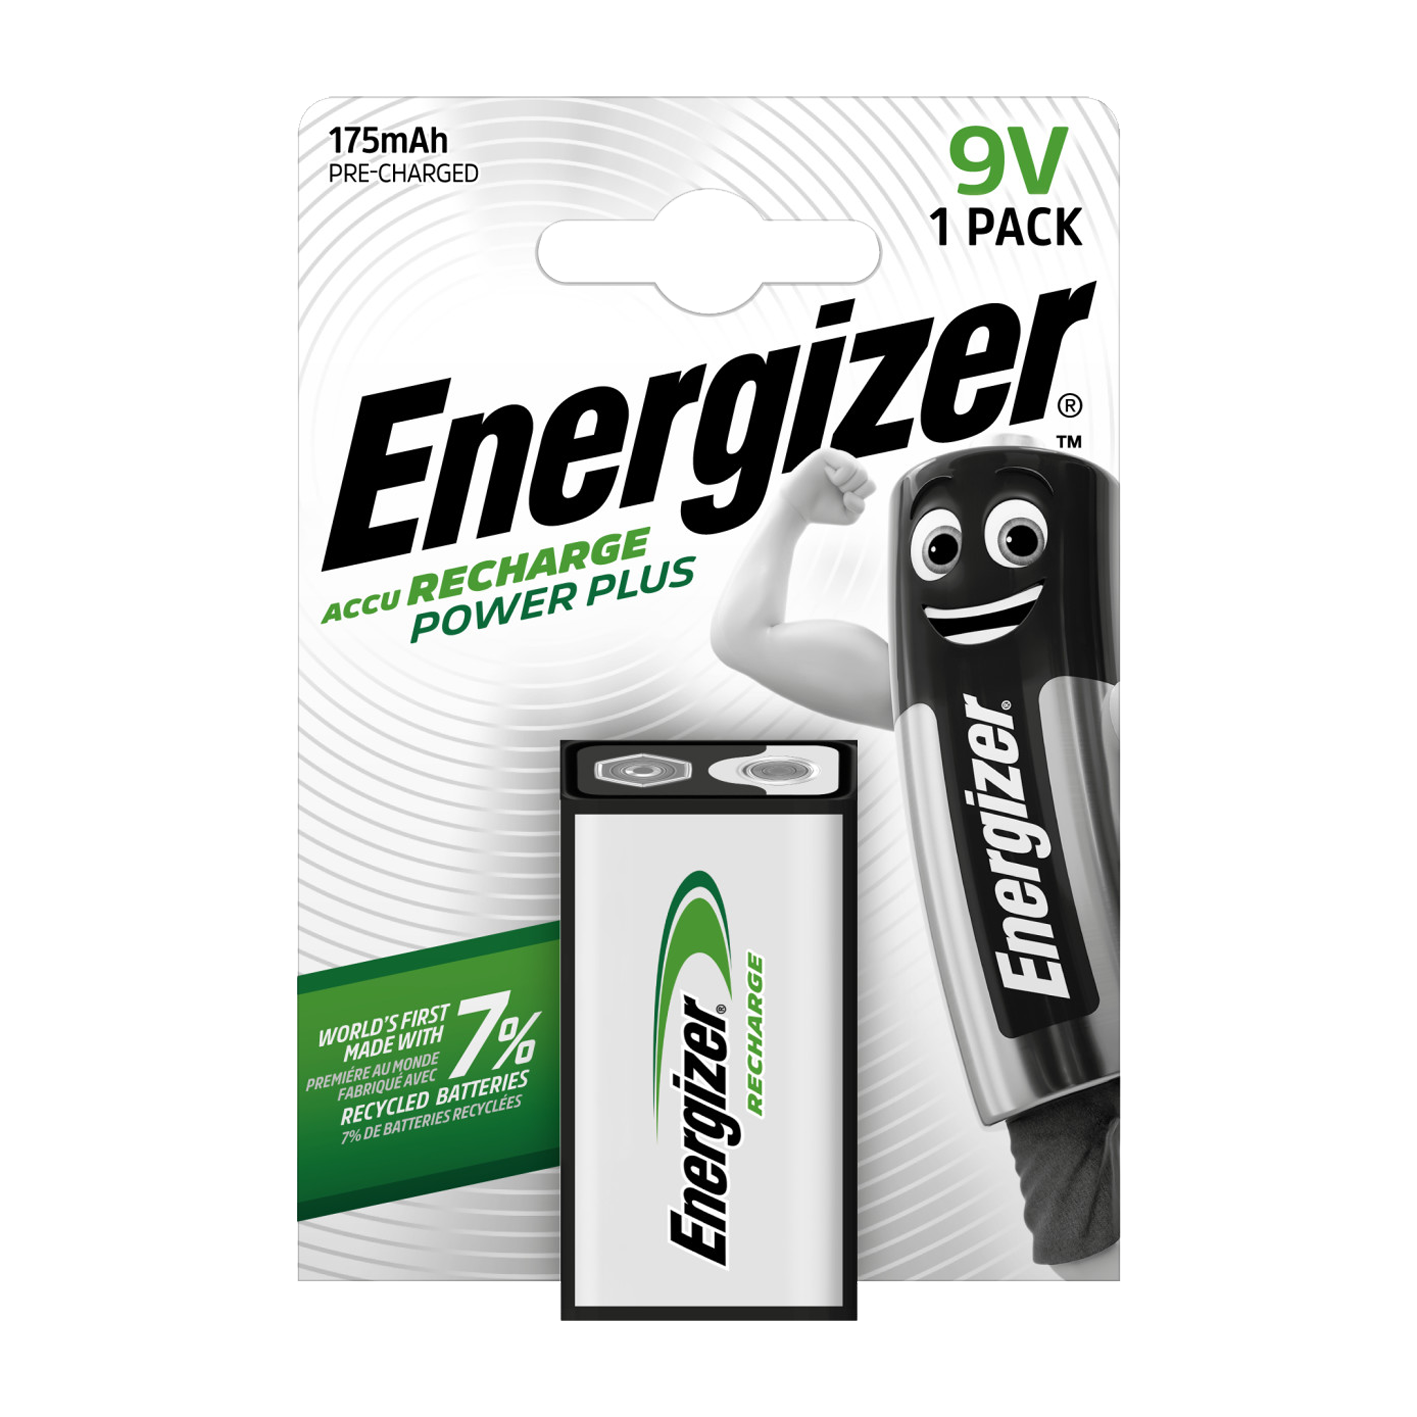 Energizer® 9V 175mAh Recharge Power Plus, paquete de 1